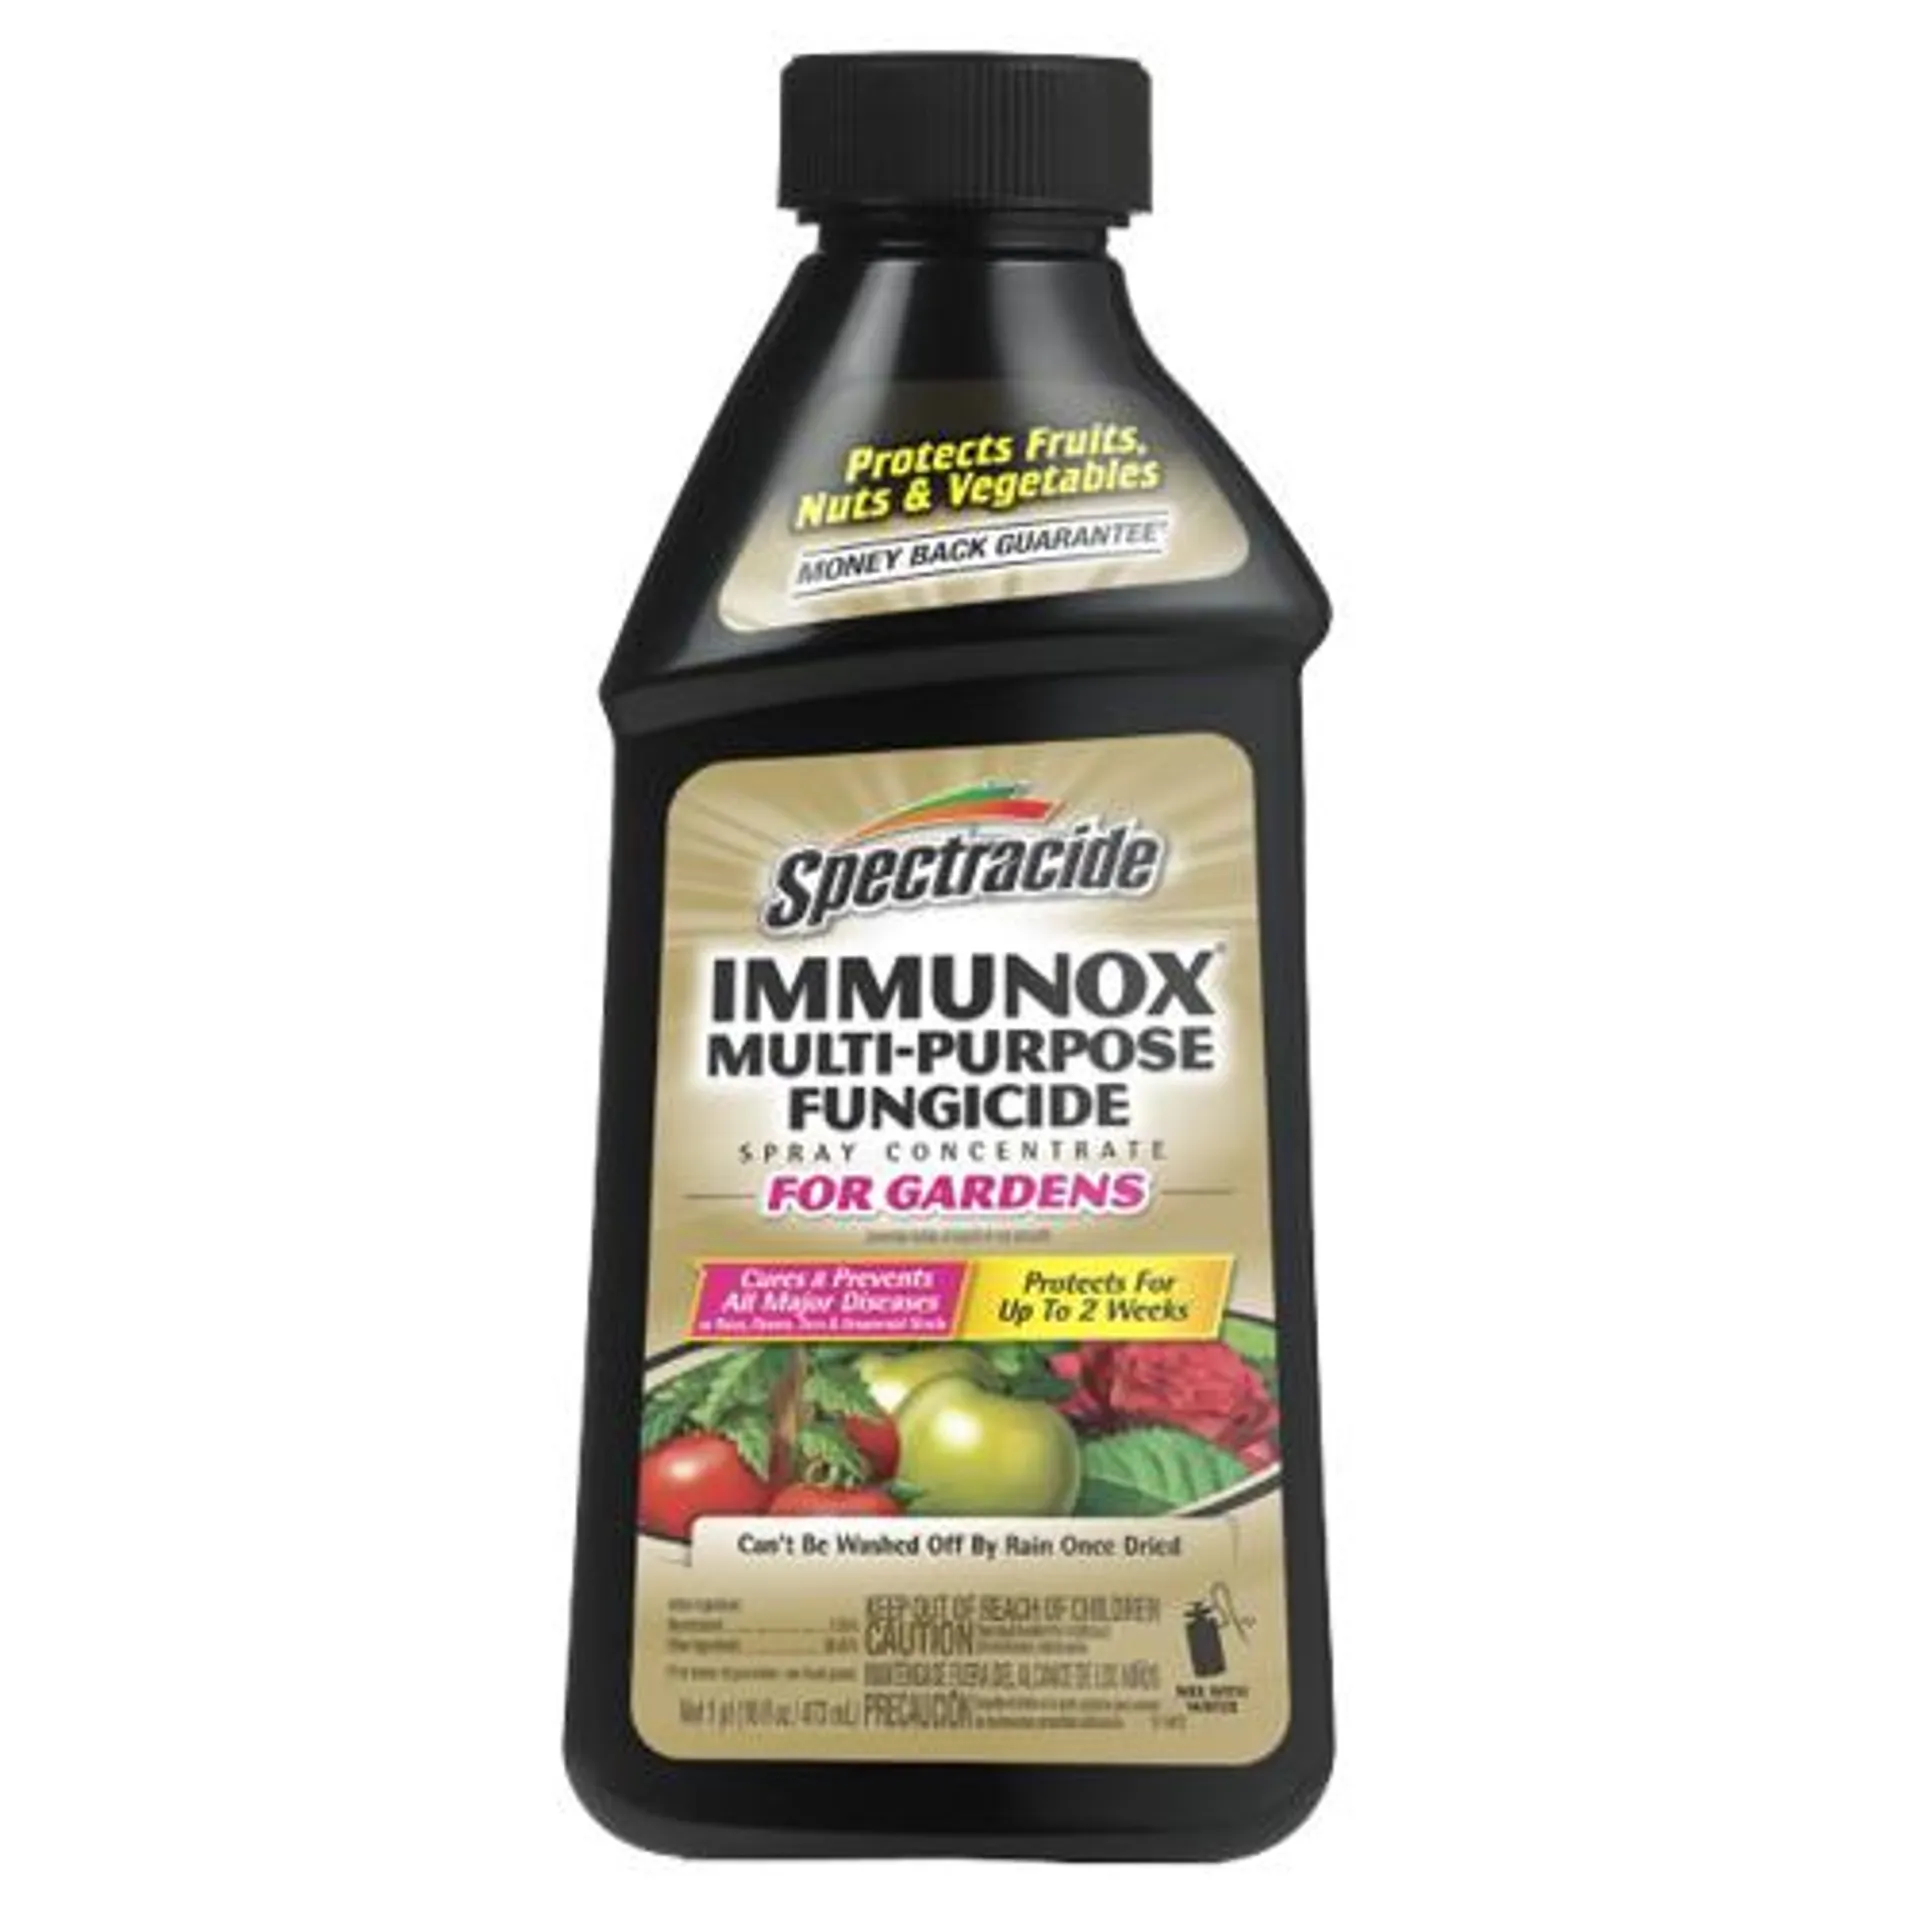 Spectracide Immunox Multi-Purpose Fungicide Spray Concentrate for Gardens- 16oz